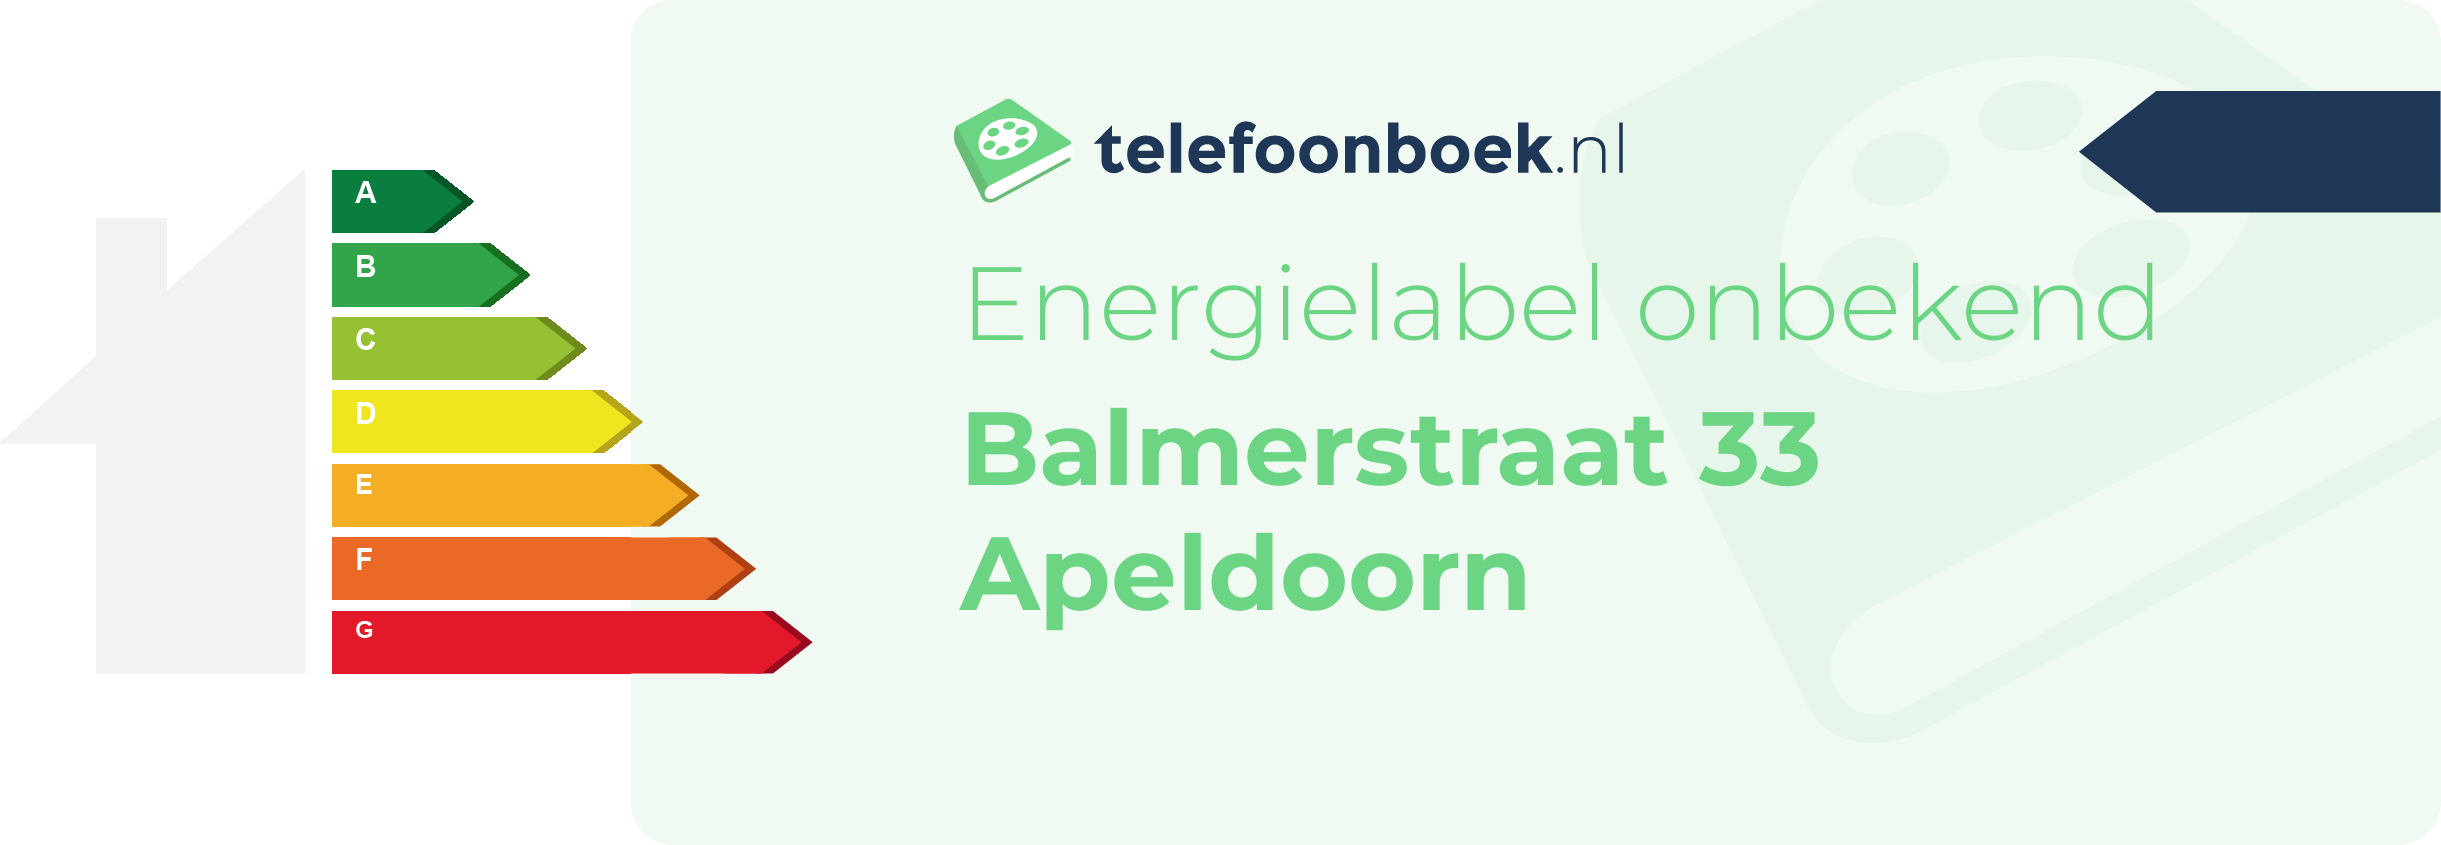 Energielabel Balmerstraat 33 Apeldoorn